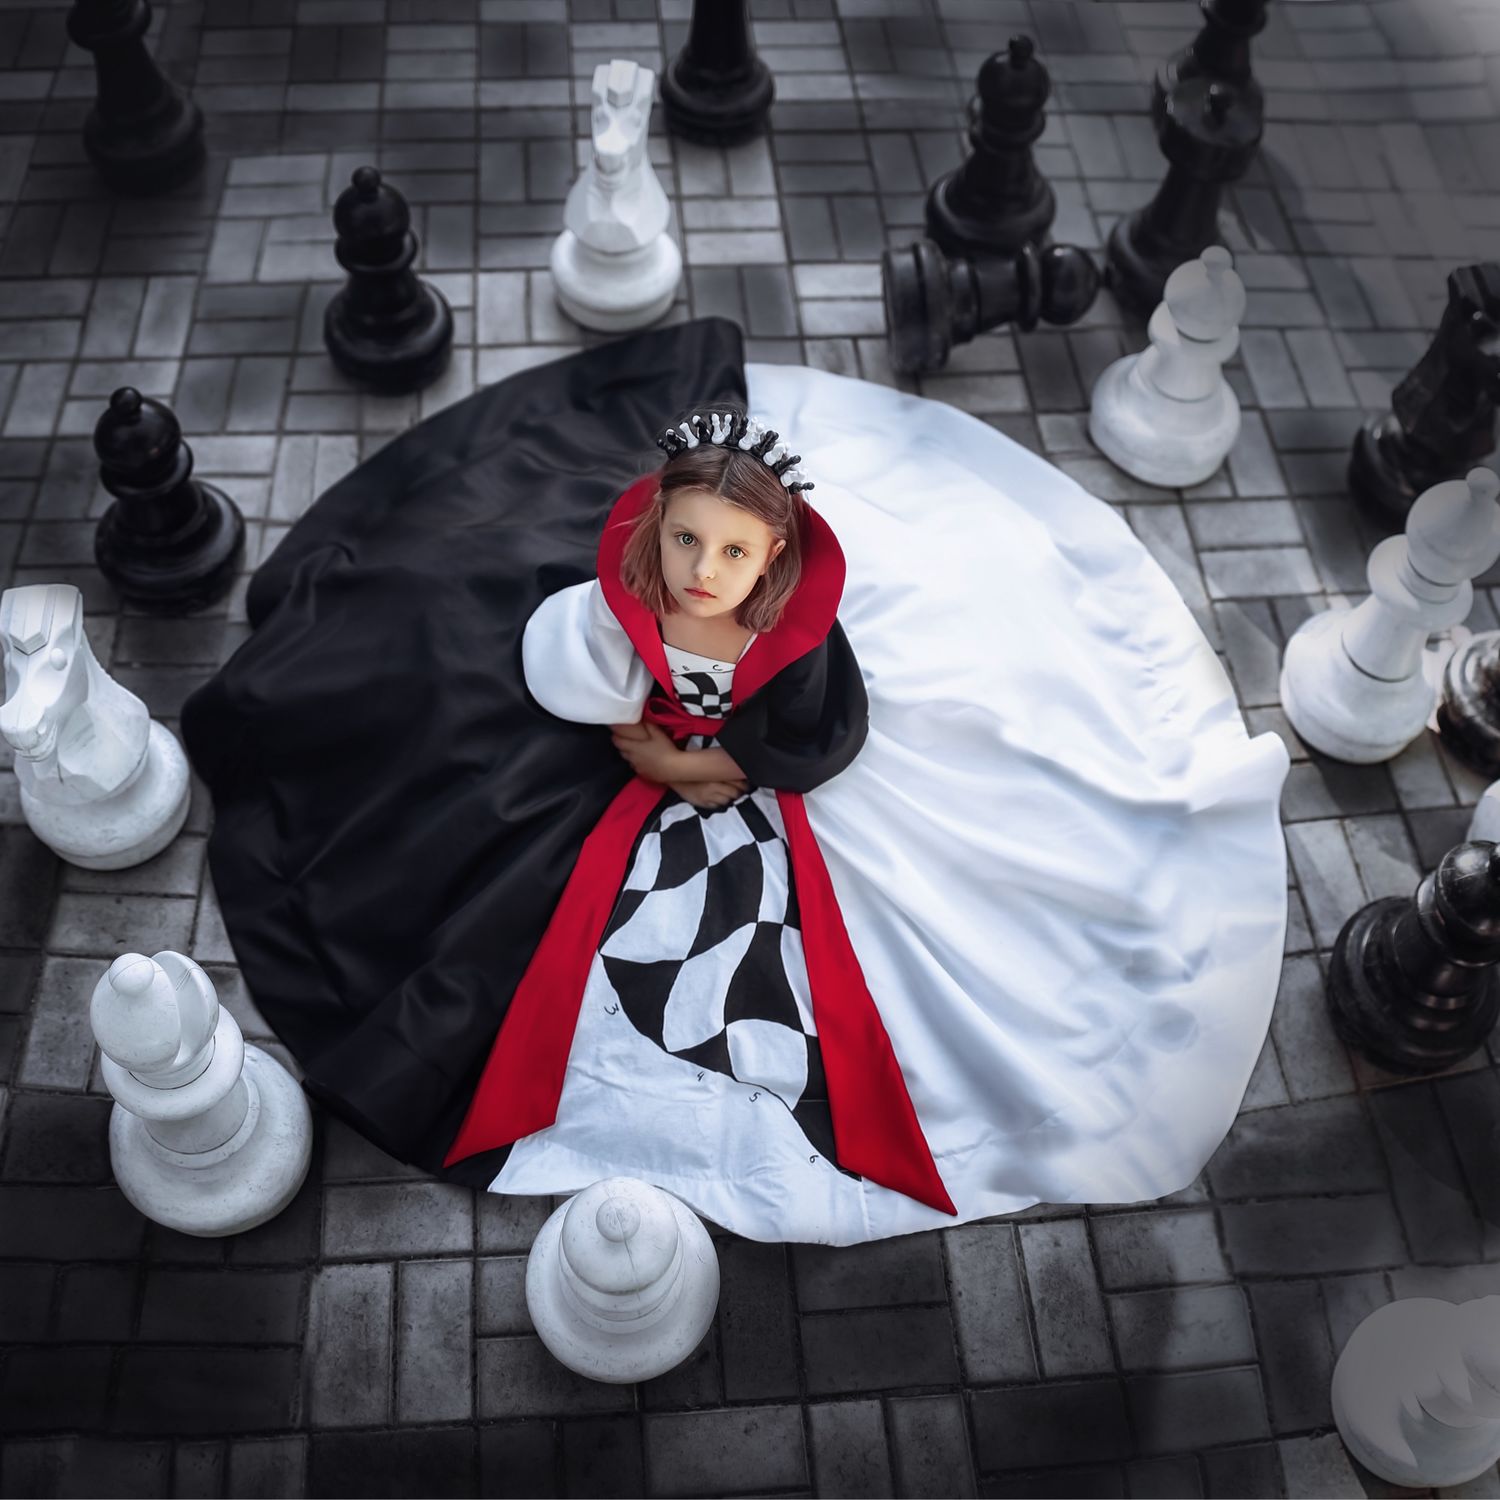 Карнавальный костюм шахматной королевы представляет участник конкурса № 1 Ирина Сорокина.